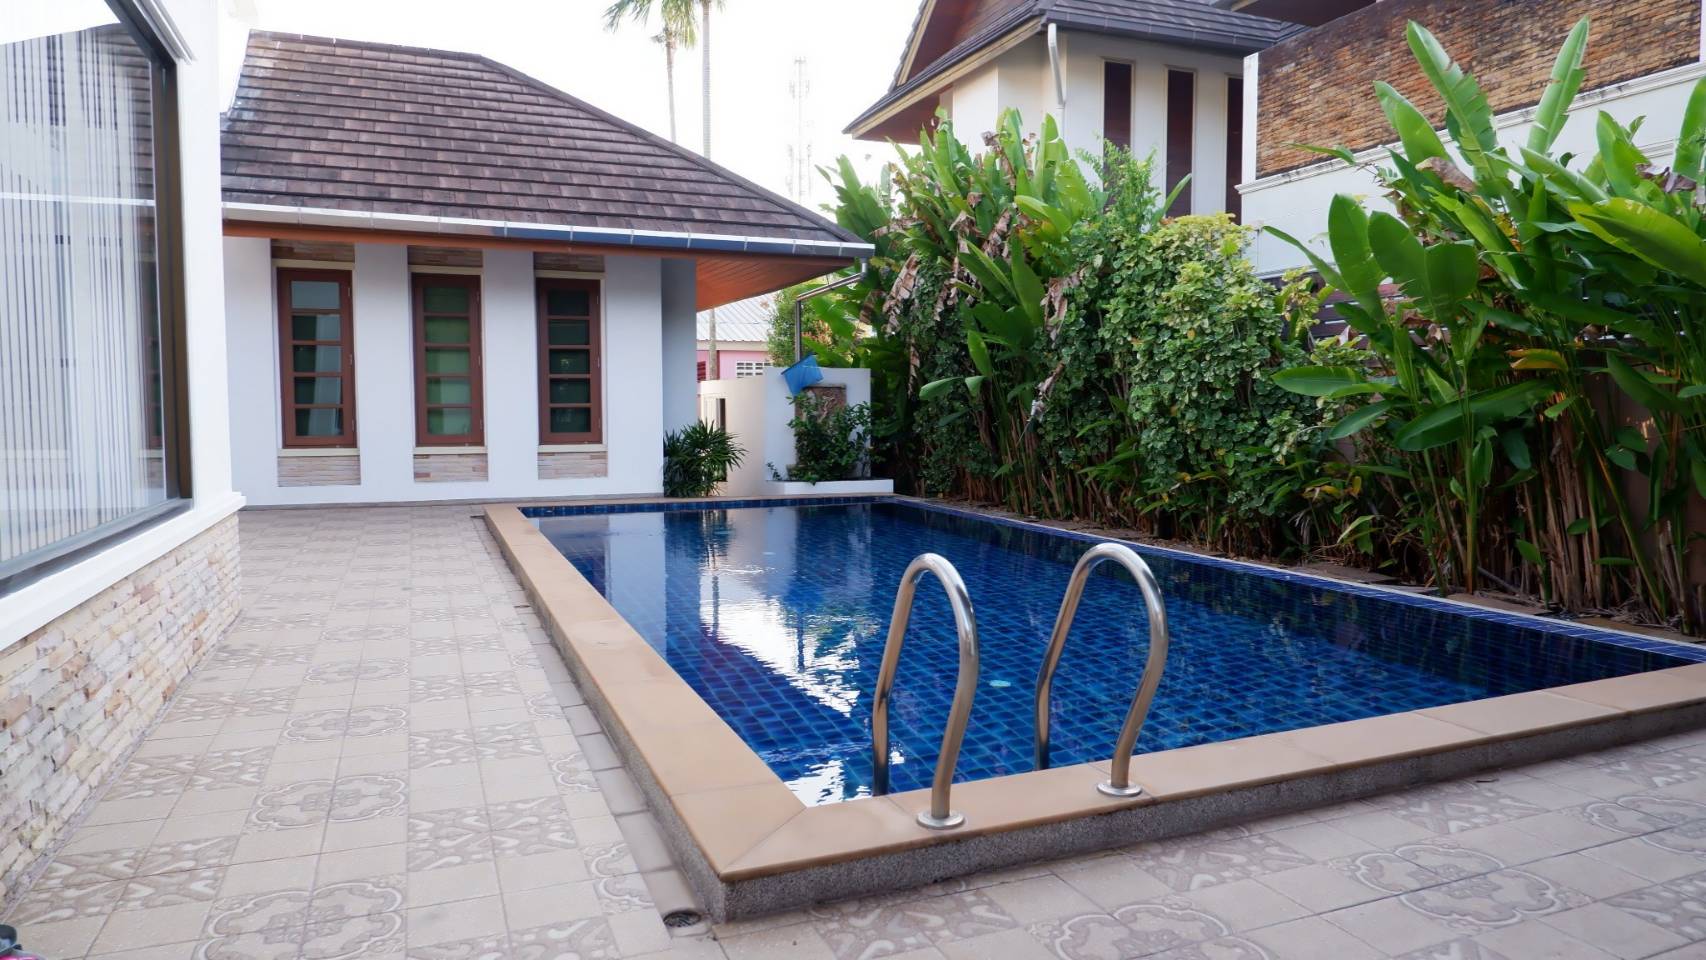 Private pool villa